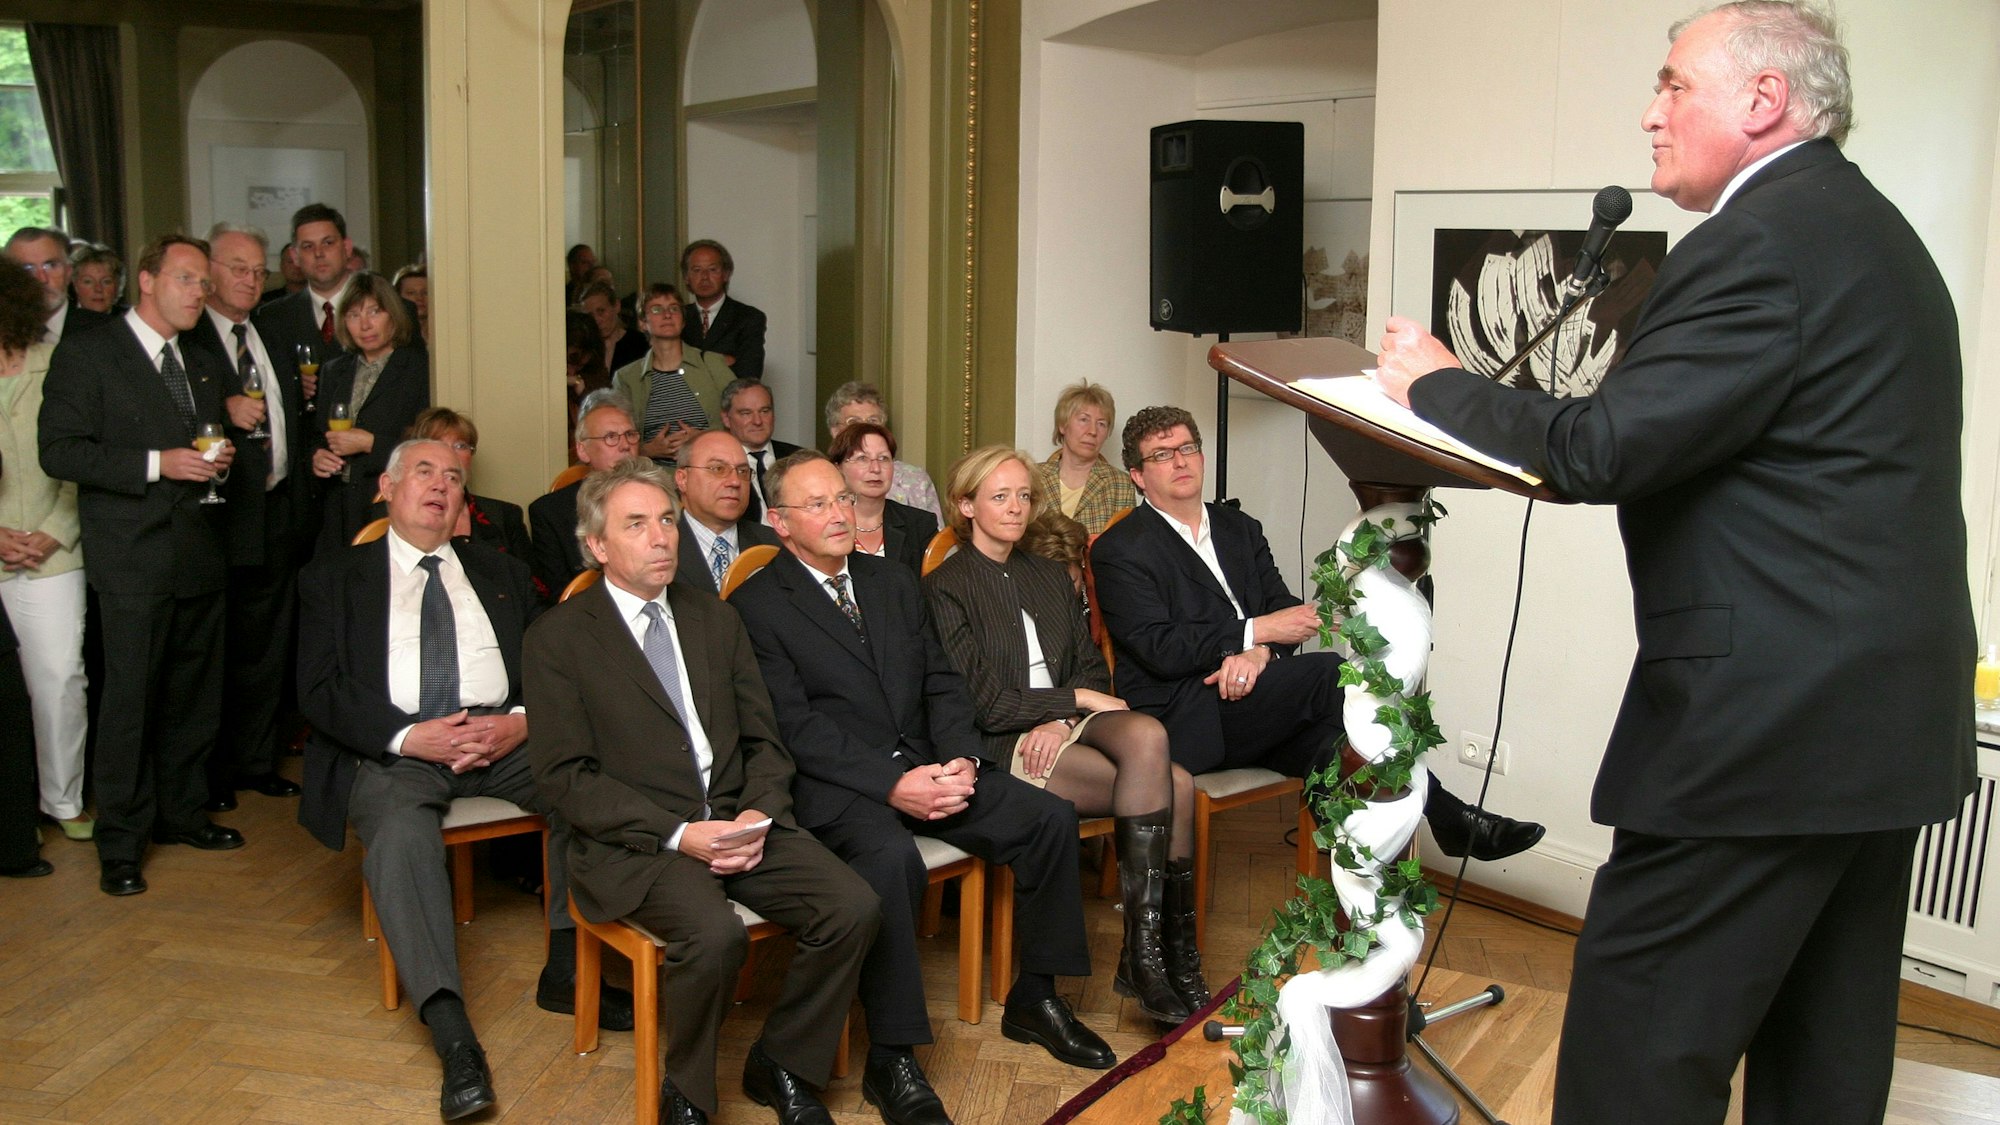 Bürgermeister Dieter Happ (r.) begrüßt im Mai 2004 zur feierlichen Gründung der von ihm initiierten Bürgerstiftung auf Schloss Eulenbroich.